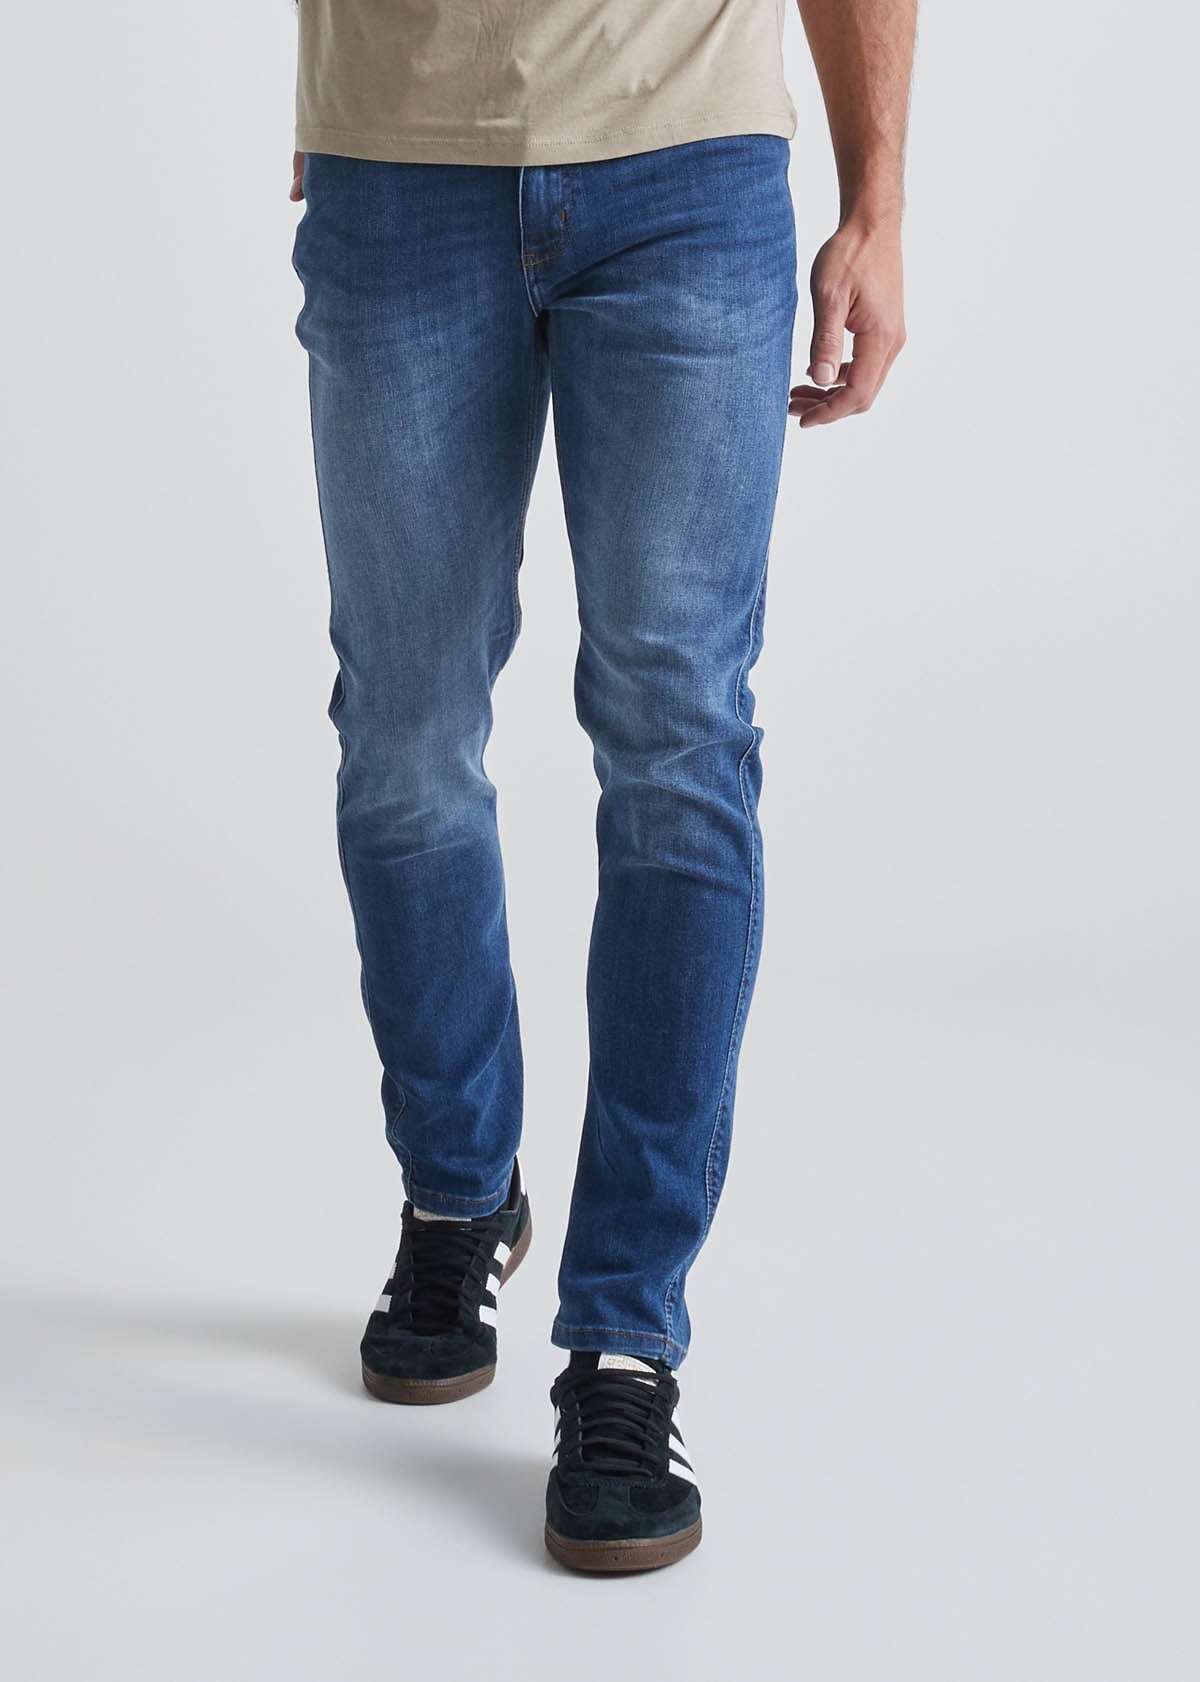 Men's Slim Fit Jeans & Pants - DUER